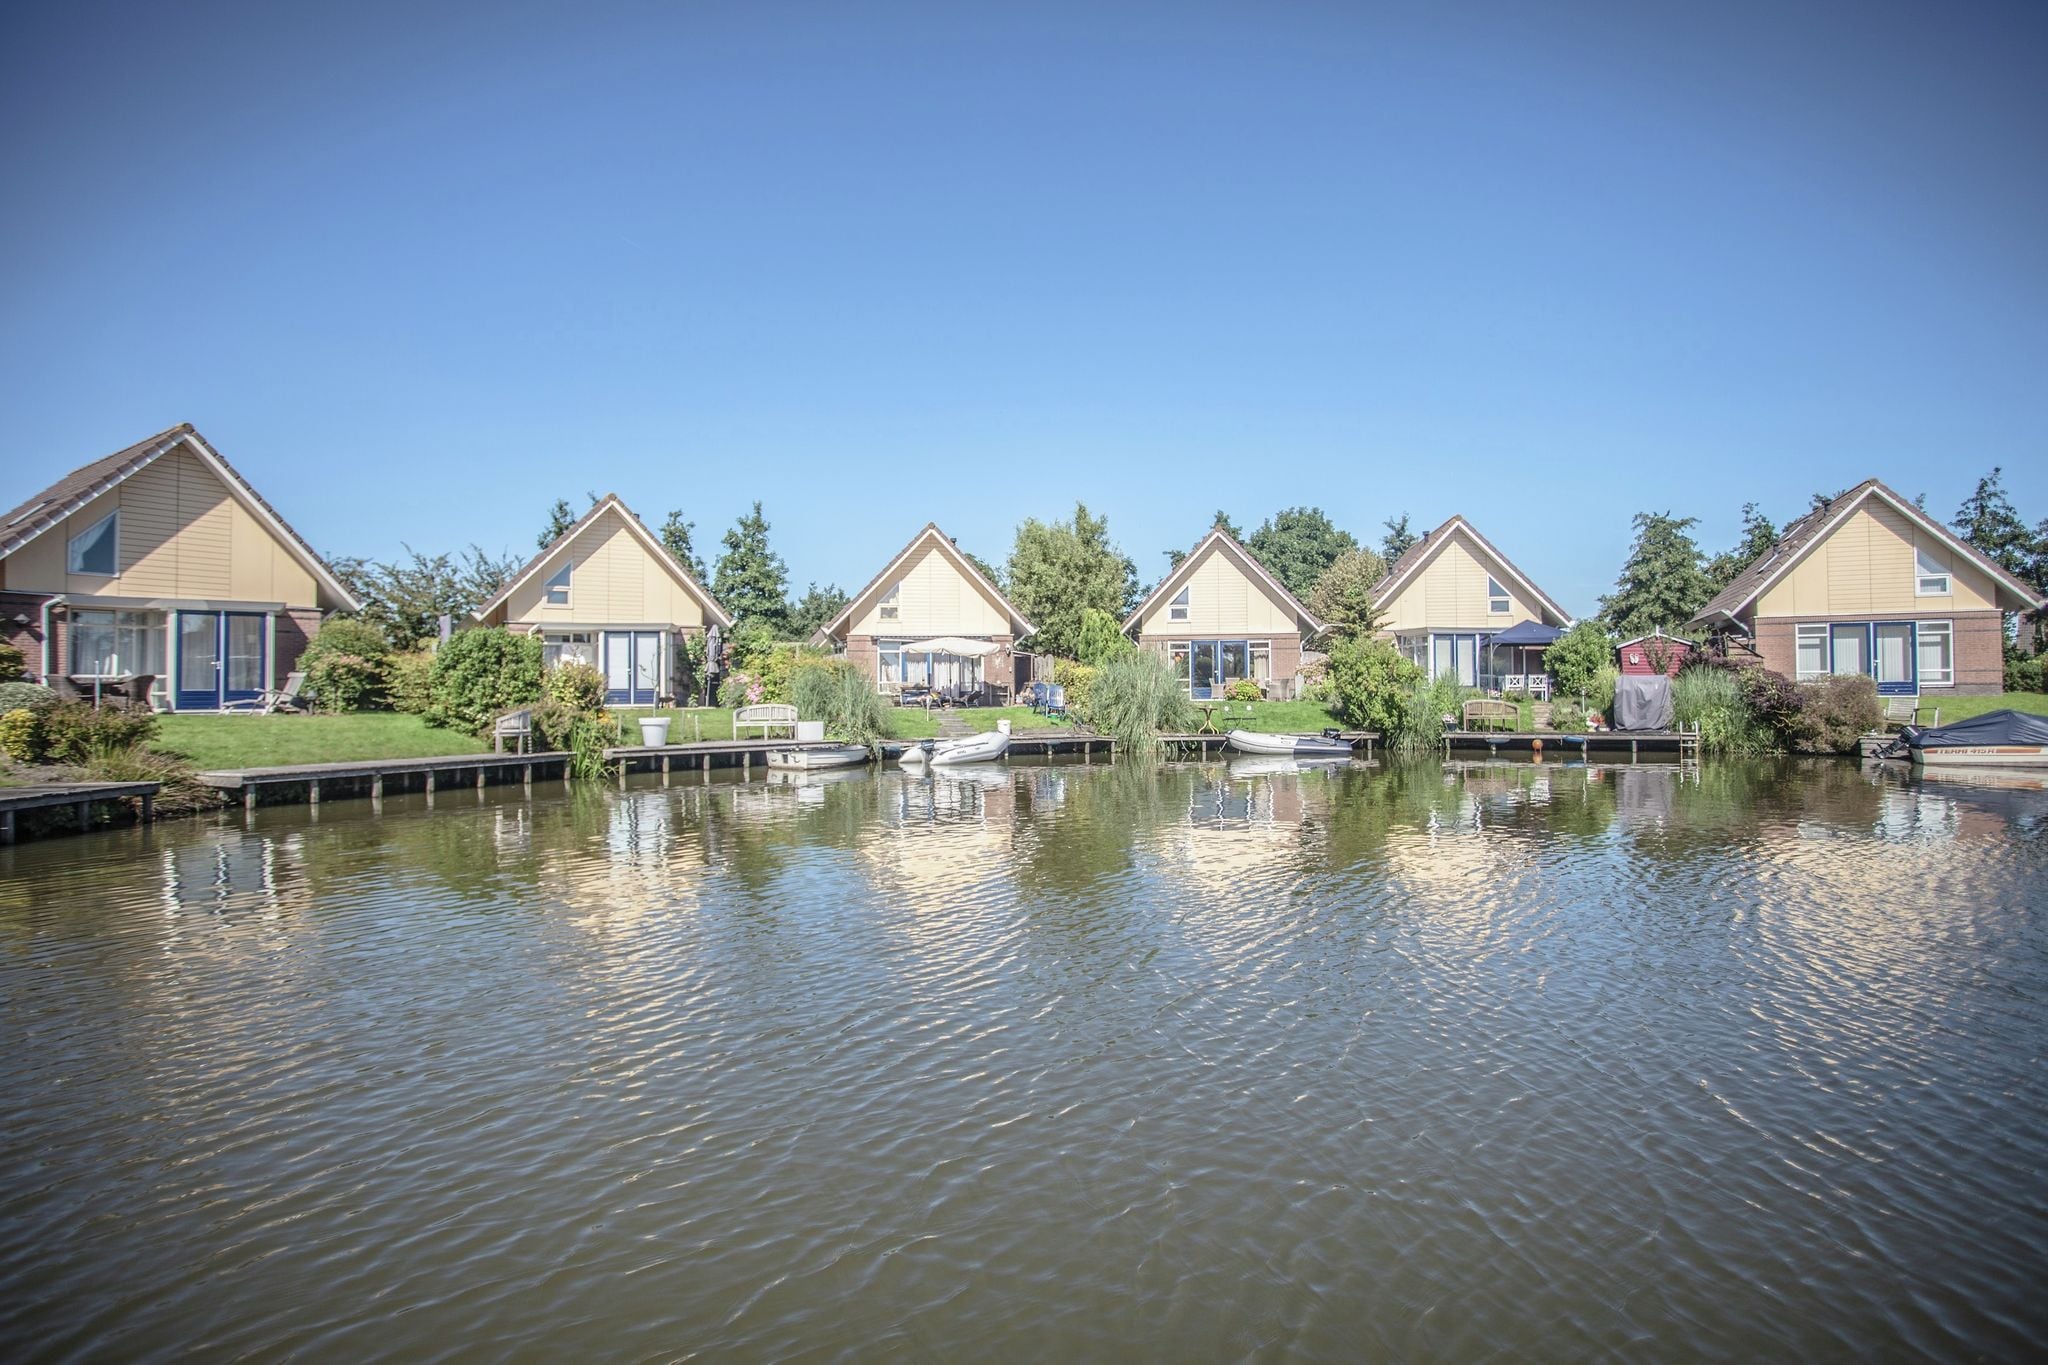 Mooi huis met steiger aan binnenwater en vlakbij IJsselmeer